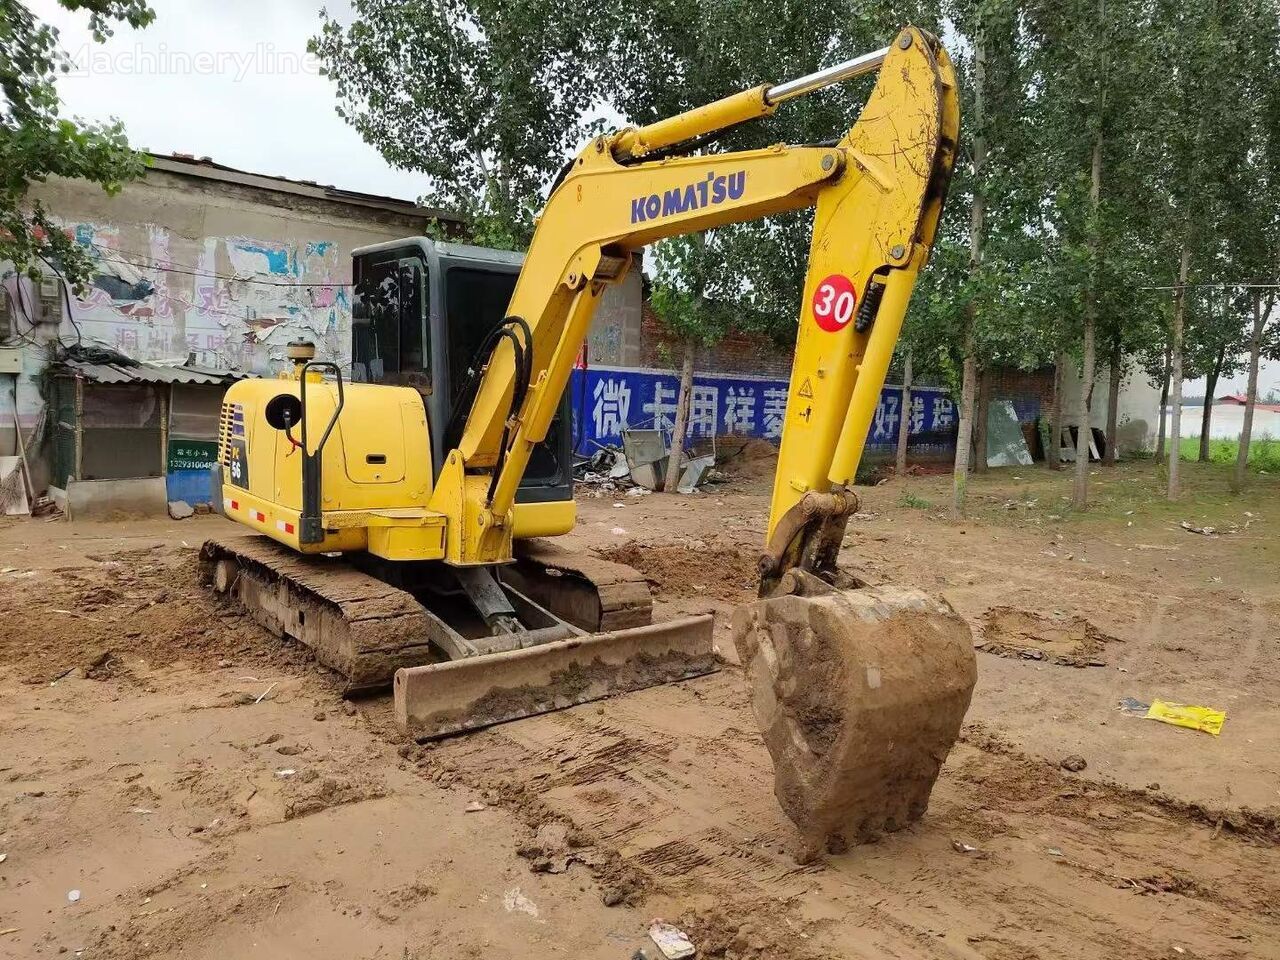 Miniexcavadora KOMATSU PC56 small excavator 5.6 tons: foto 5